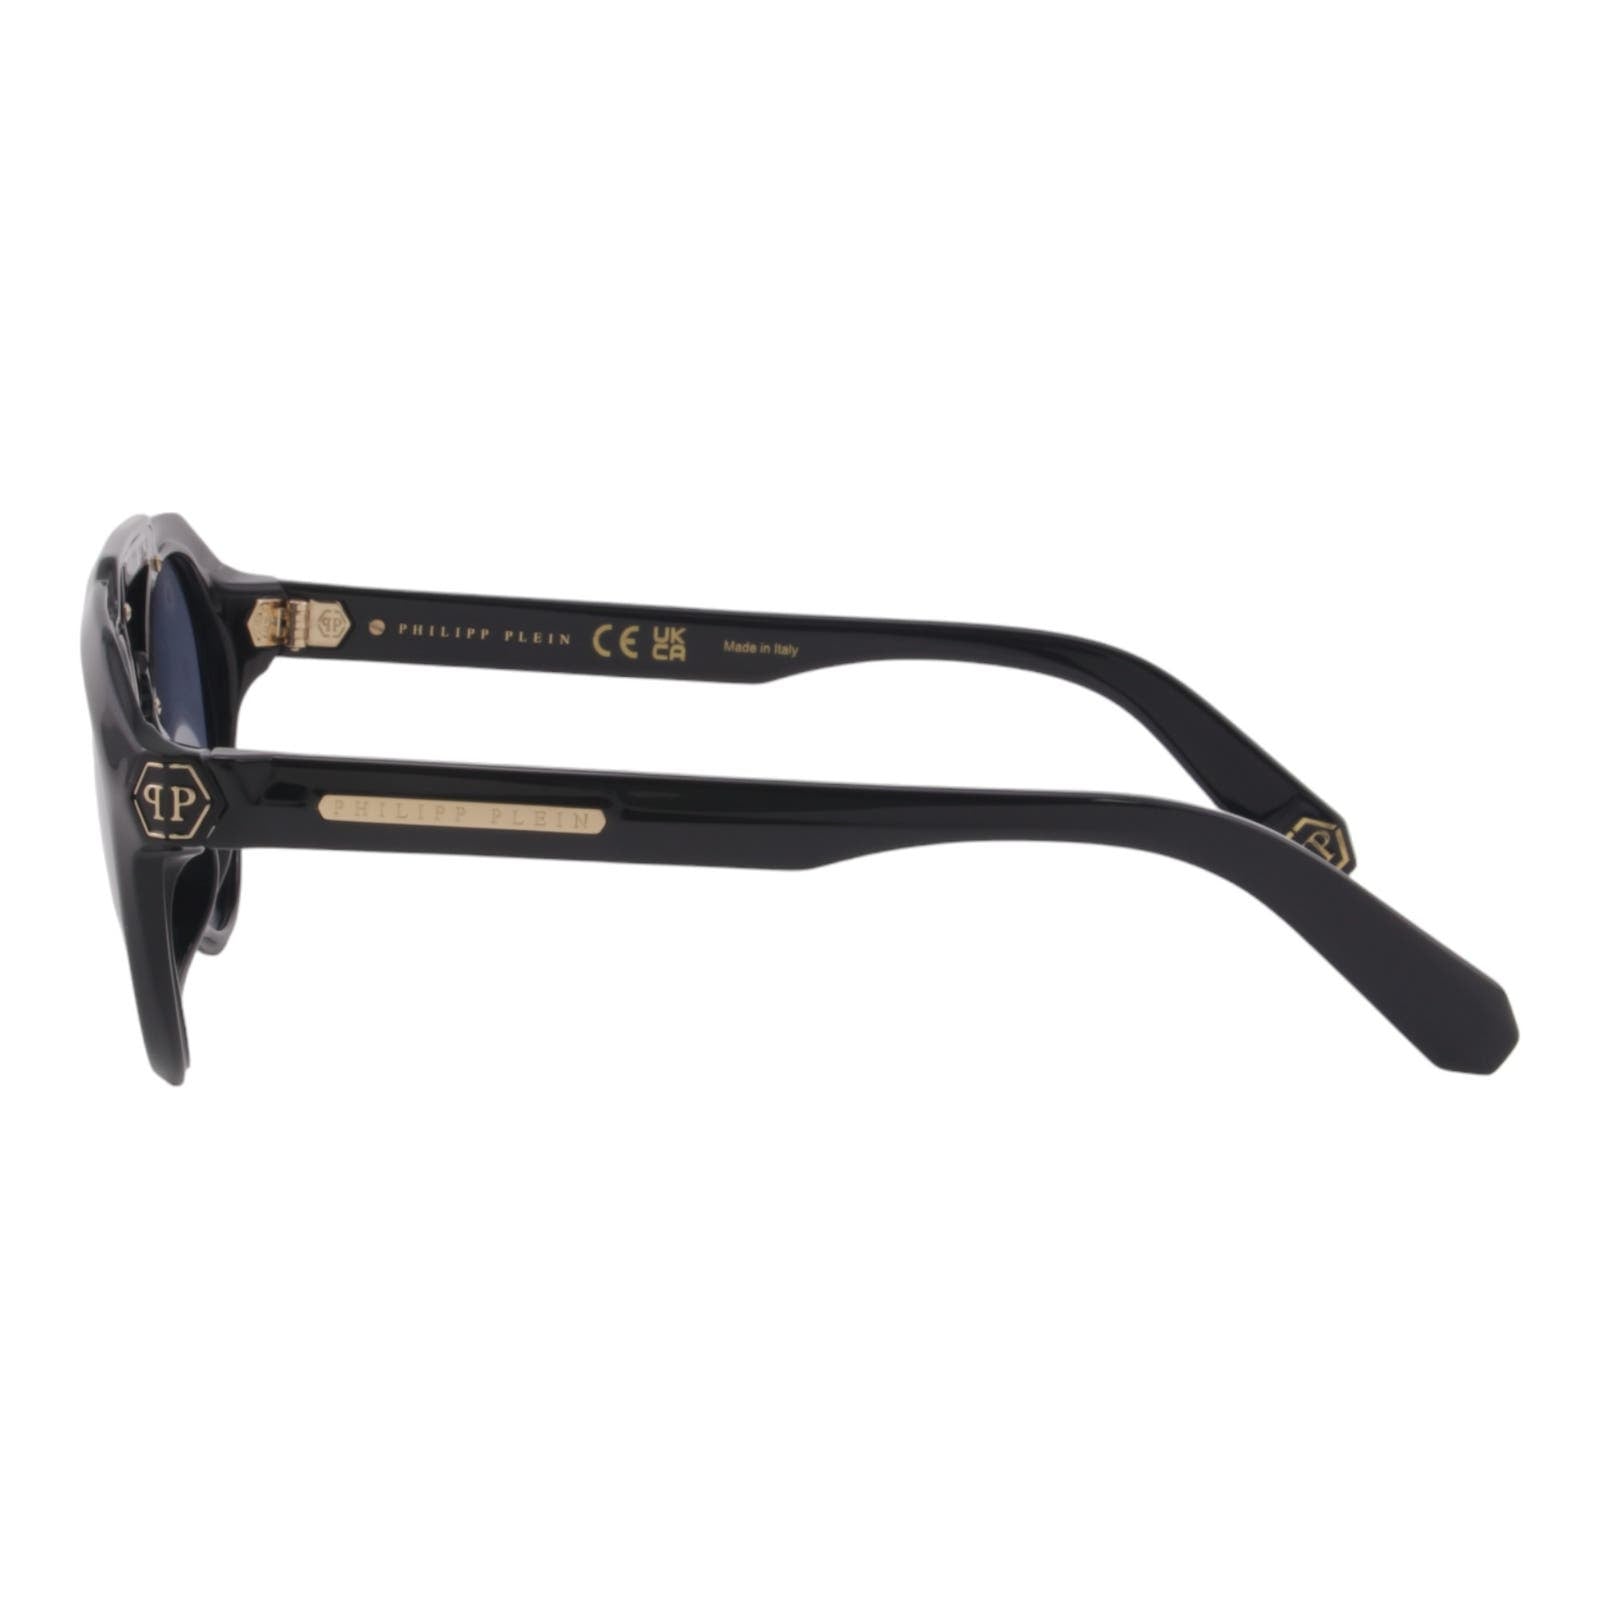 Men Designer Sunglasses SPP045M-0700 Black Full Rim Round Frame Blue Lens